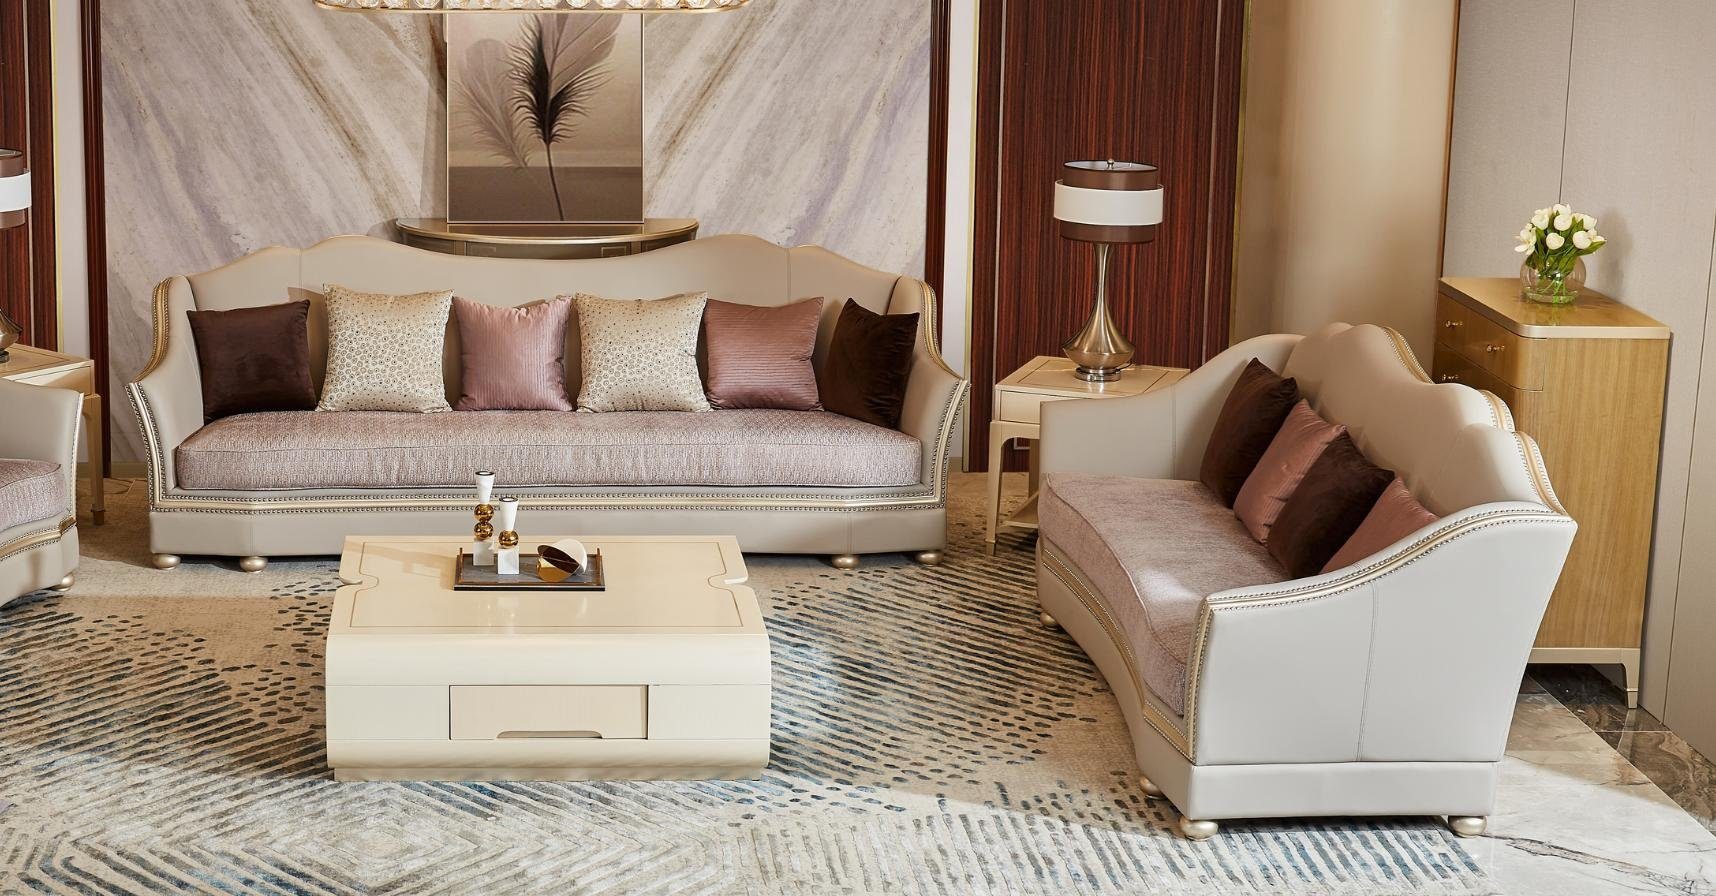 JVmoebel in Luxus Design Europe Made Sofa Sofagarnitur, Sitzpolster Möbel Wohnzimmer